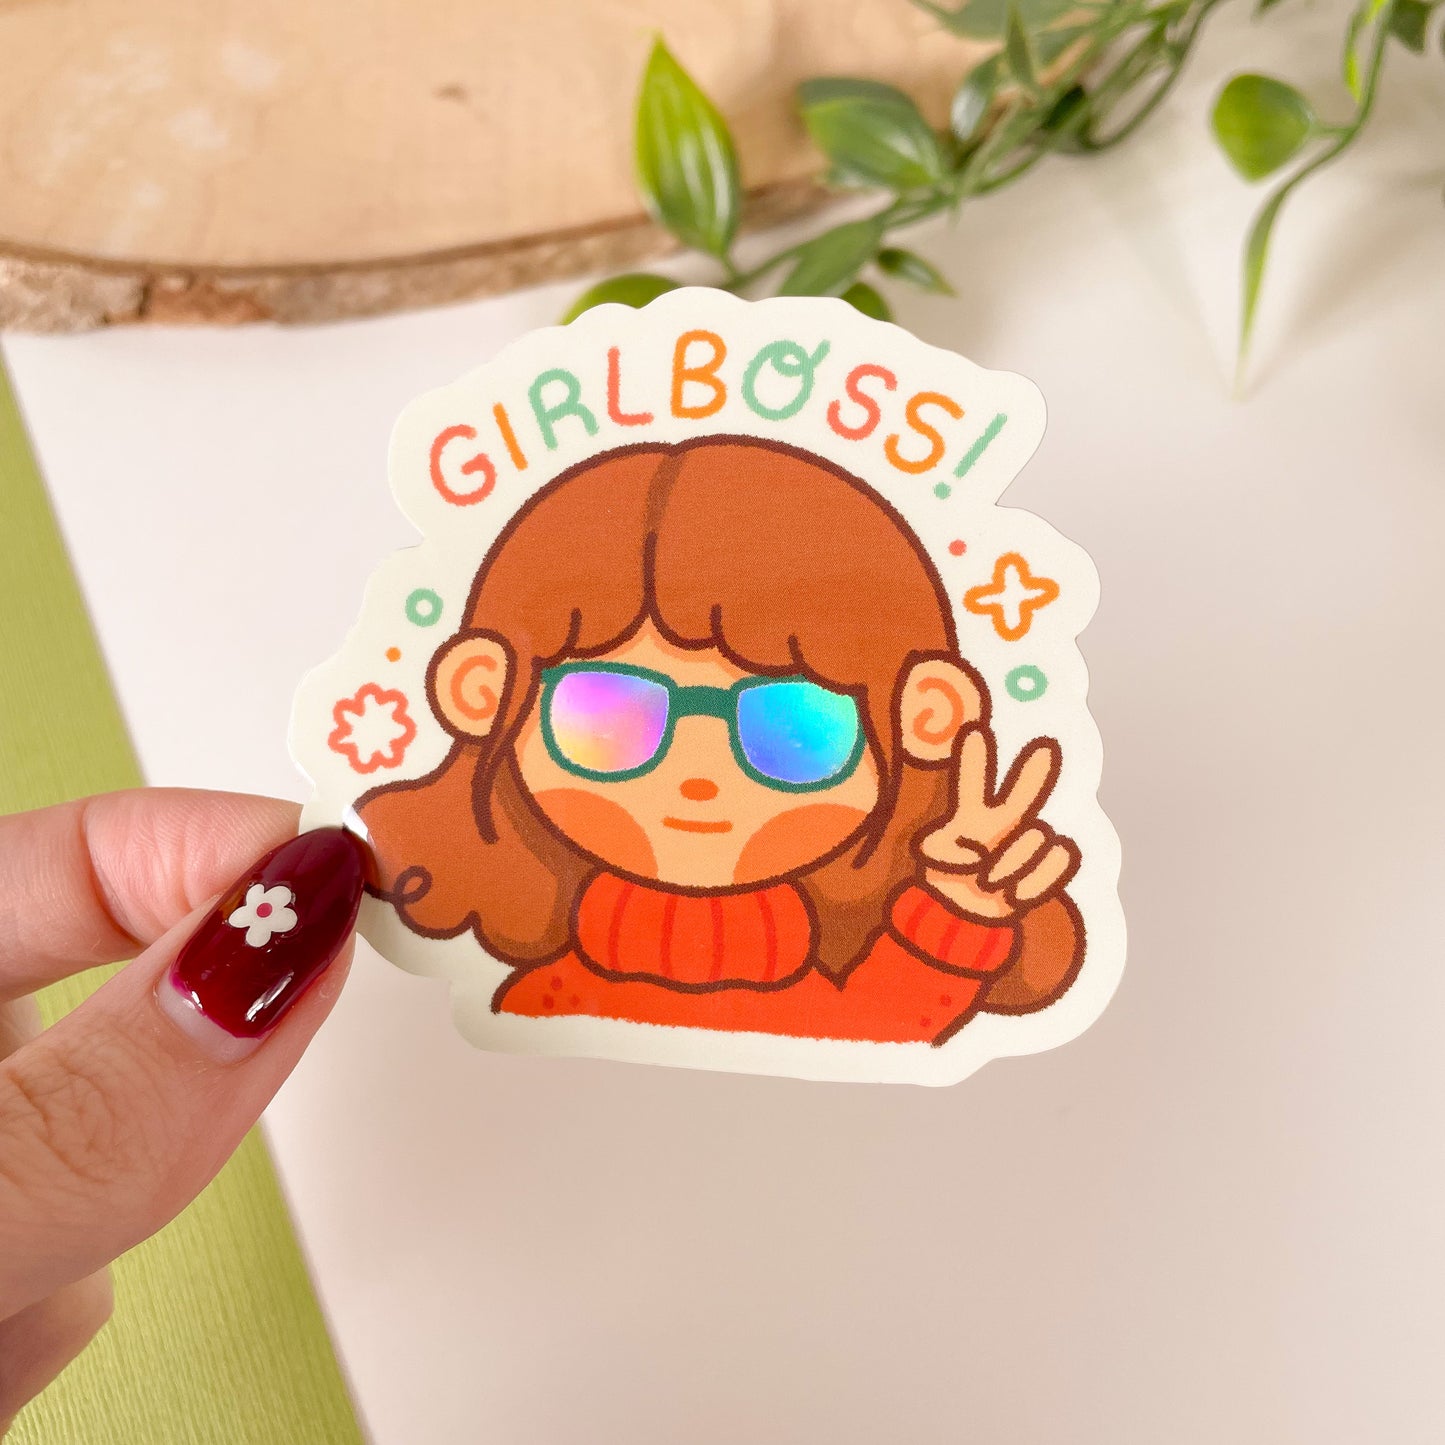 GIRLBOSS! - Iridescent Sticker